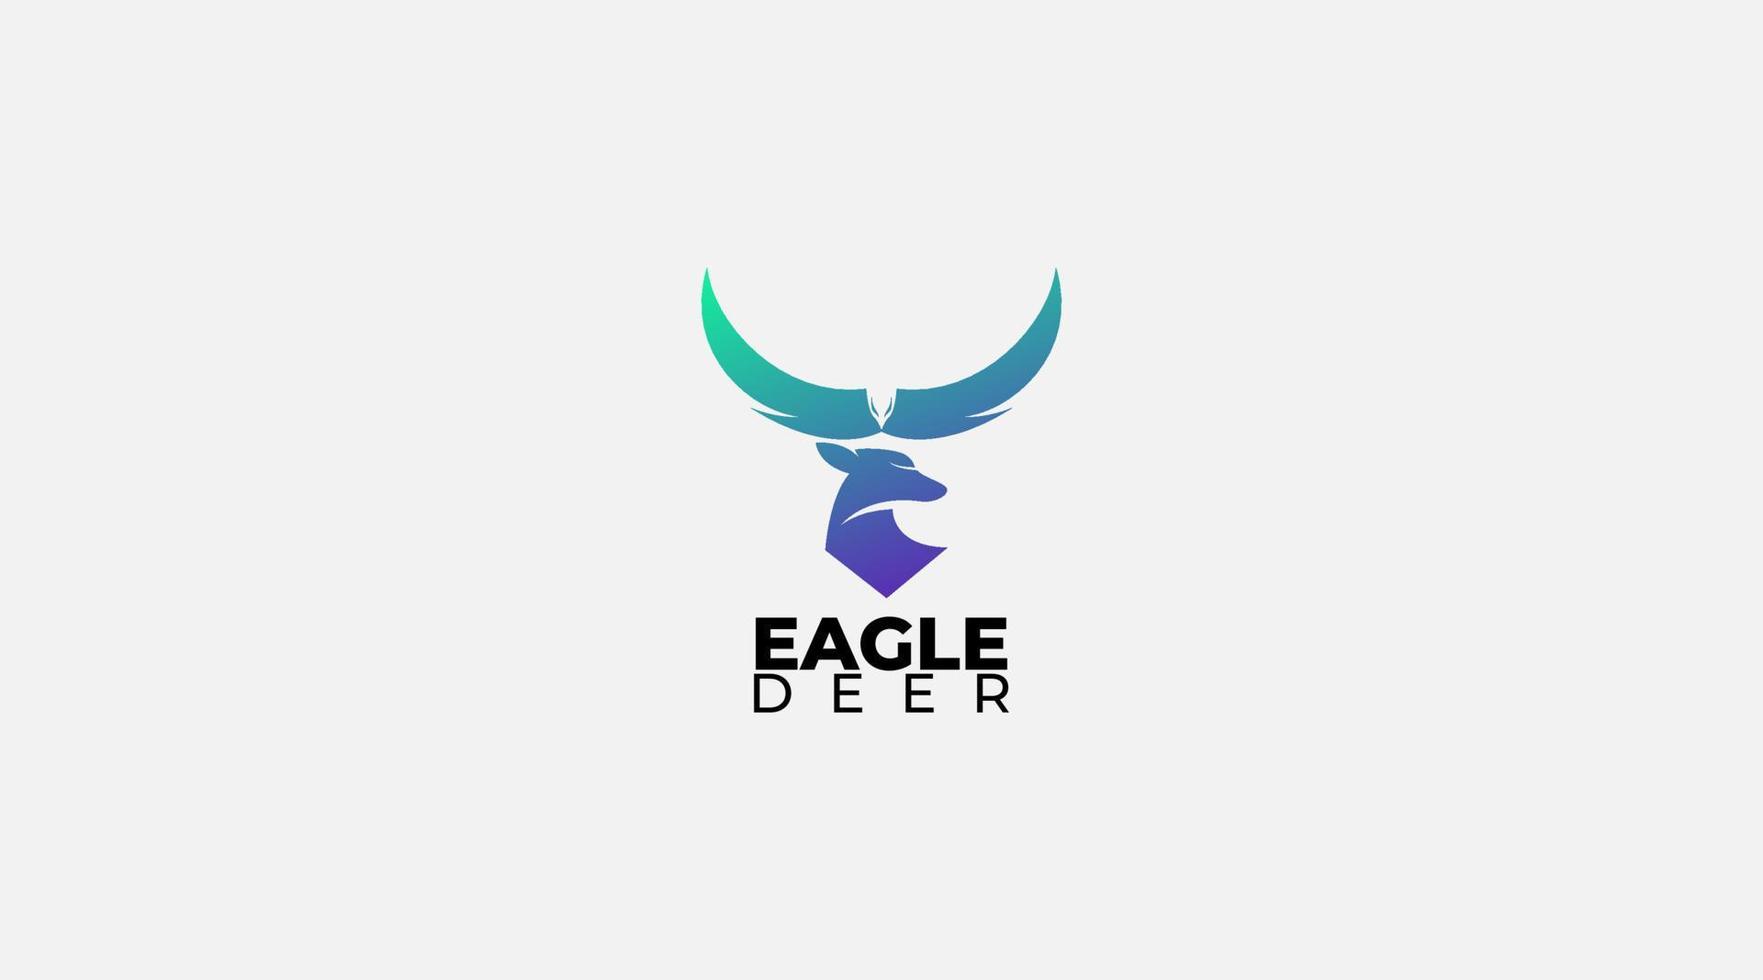 Minimal Eagle Deer Logo design illustration vector